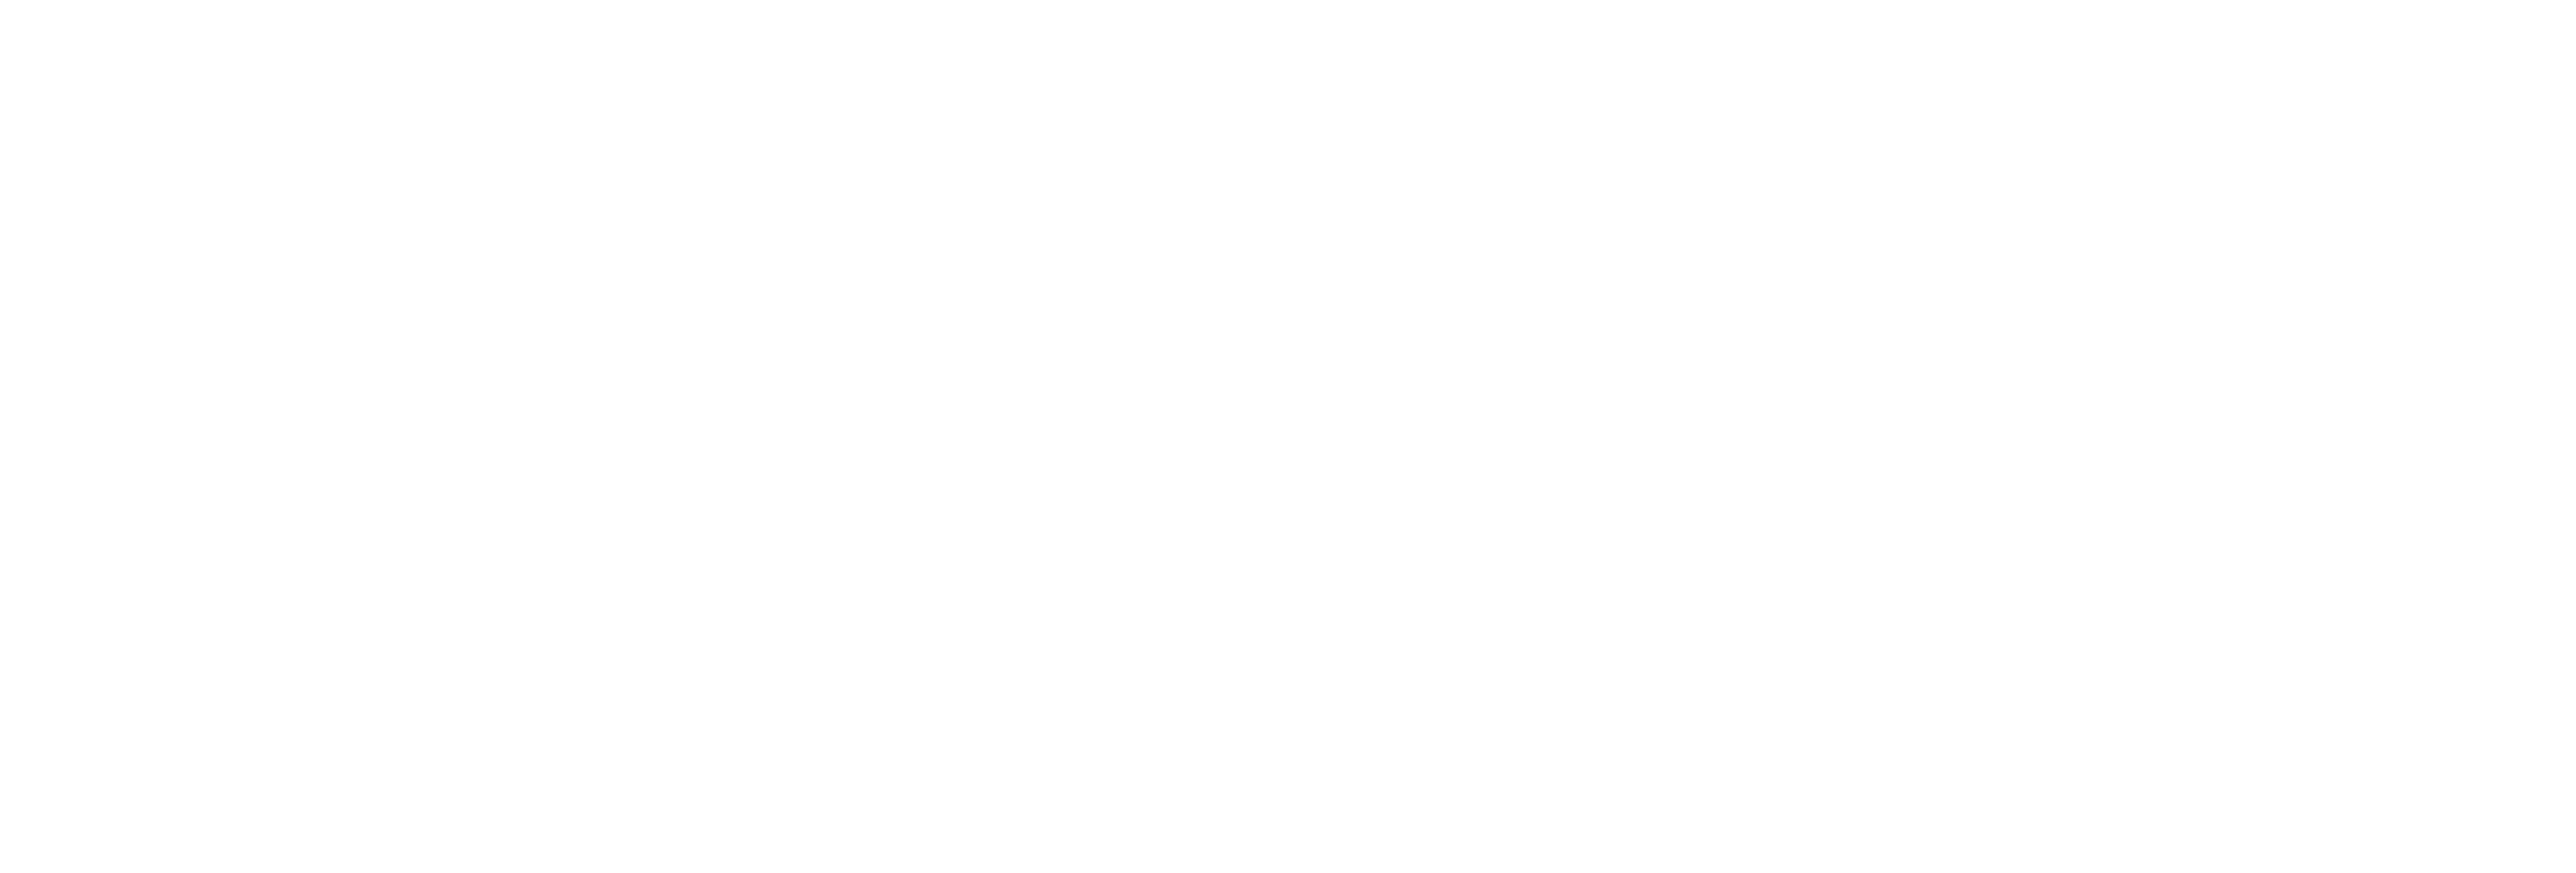 Juventus Official Fan Club "Amico della Juve"